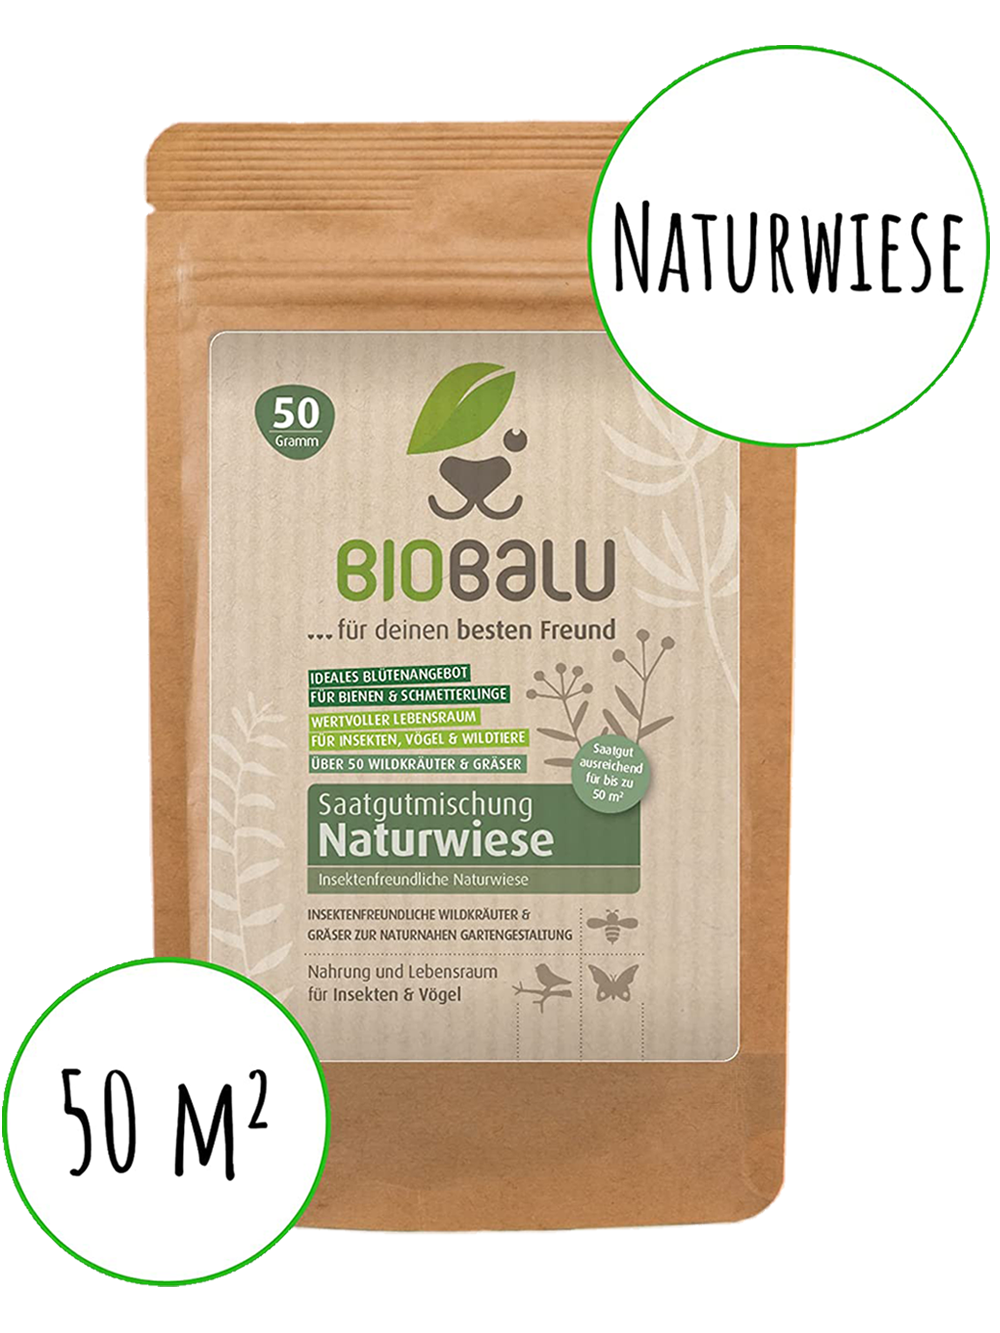 Biobalu Naturwiese 50g